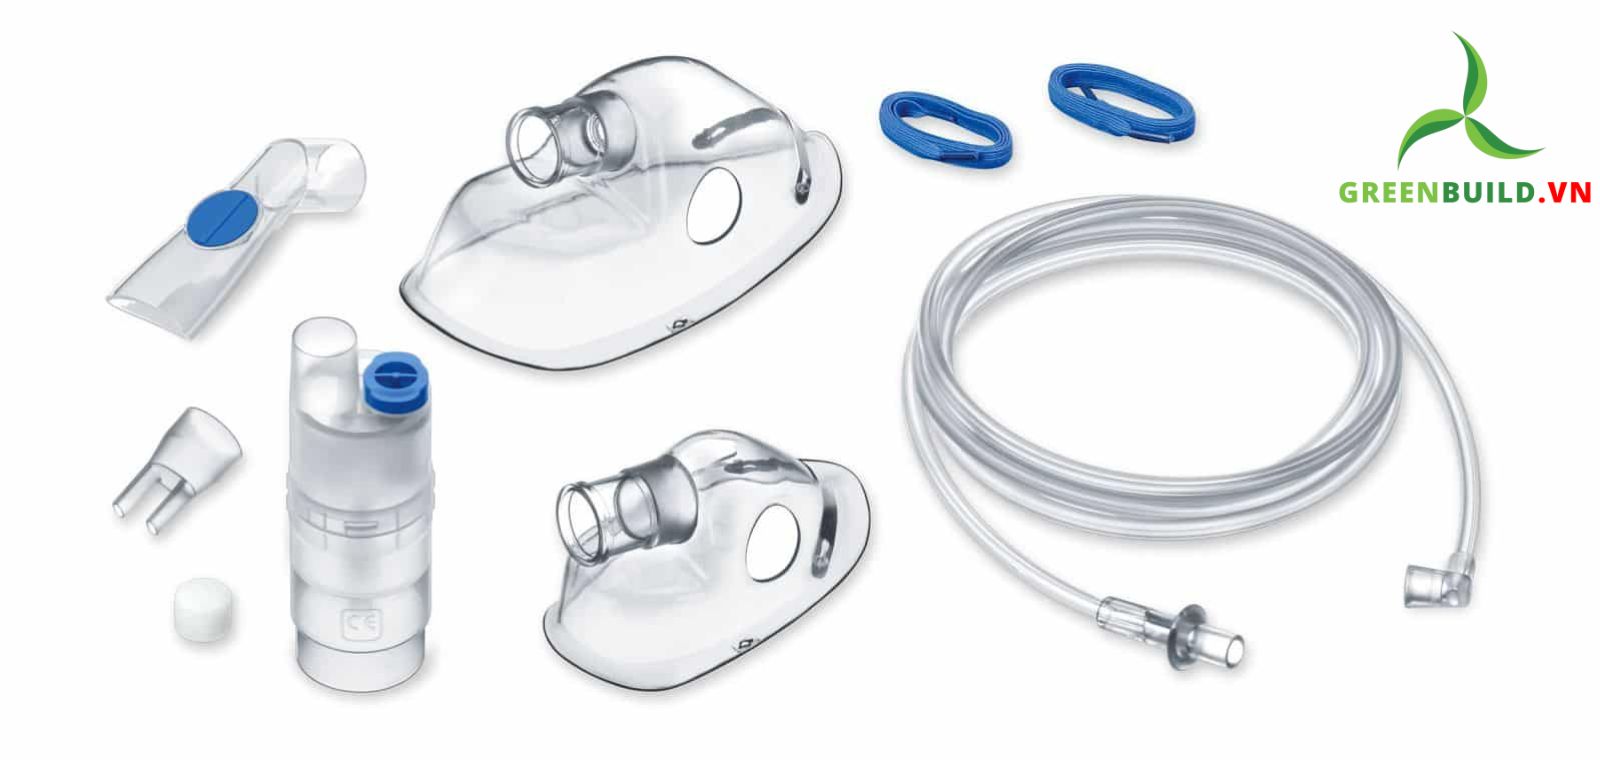 Máy xông khí dung Beurer IH26, máy xông mũi họng là một loại máy xông dạng phun sương, đưa sương mịn thoát ra khỏi bầu xông, giúp hỗ trợ điều trị các bệnh liên quan đến đường hô hấp